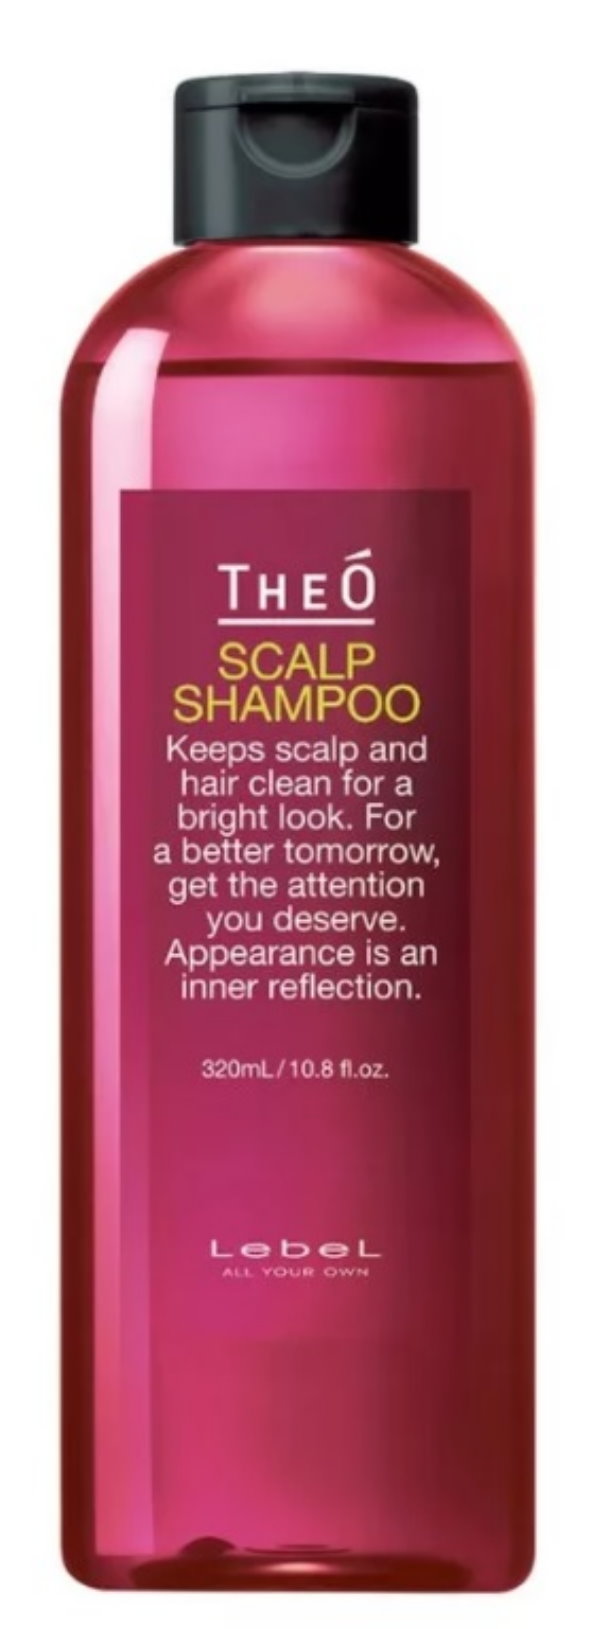 Шампунь многофункциональный Lebel TheO Scalp Shampoo, 320 мл шампунь lebel theo scalp shampoo 320 мл